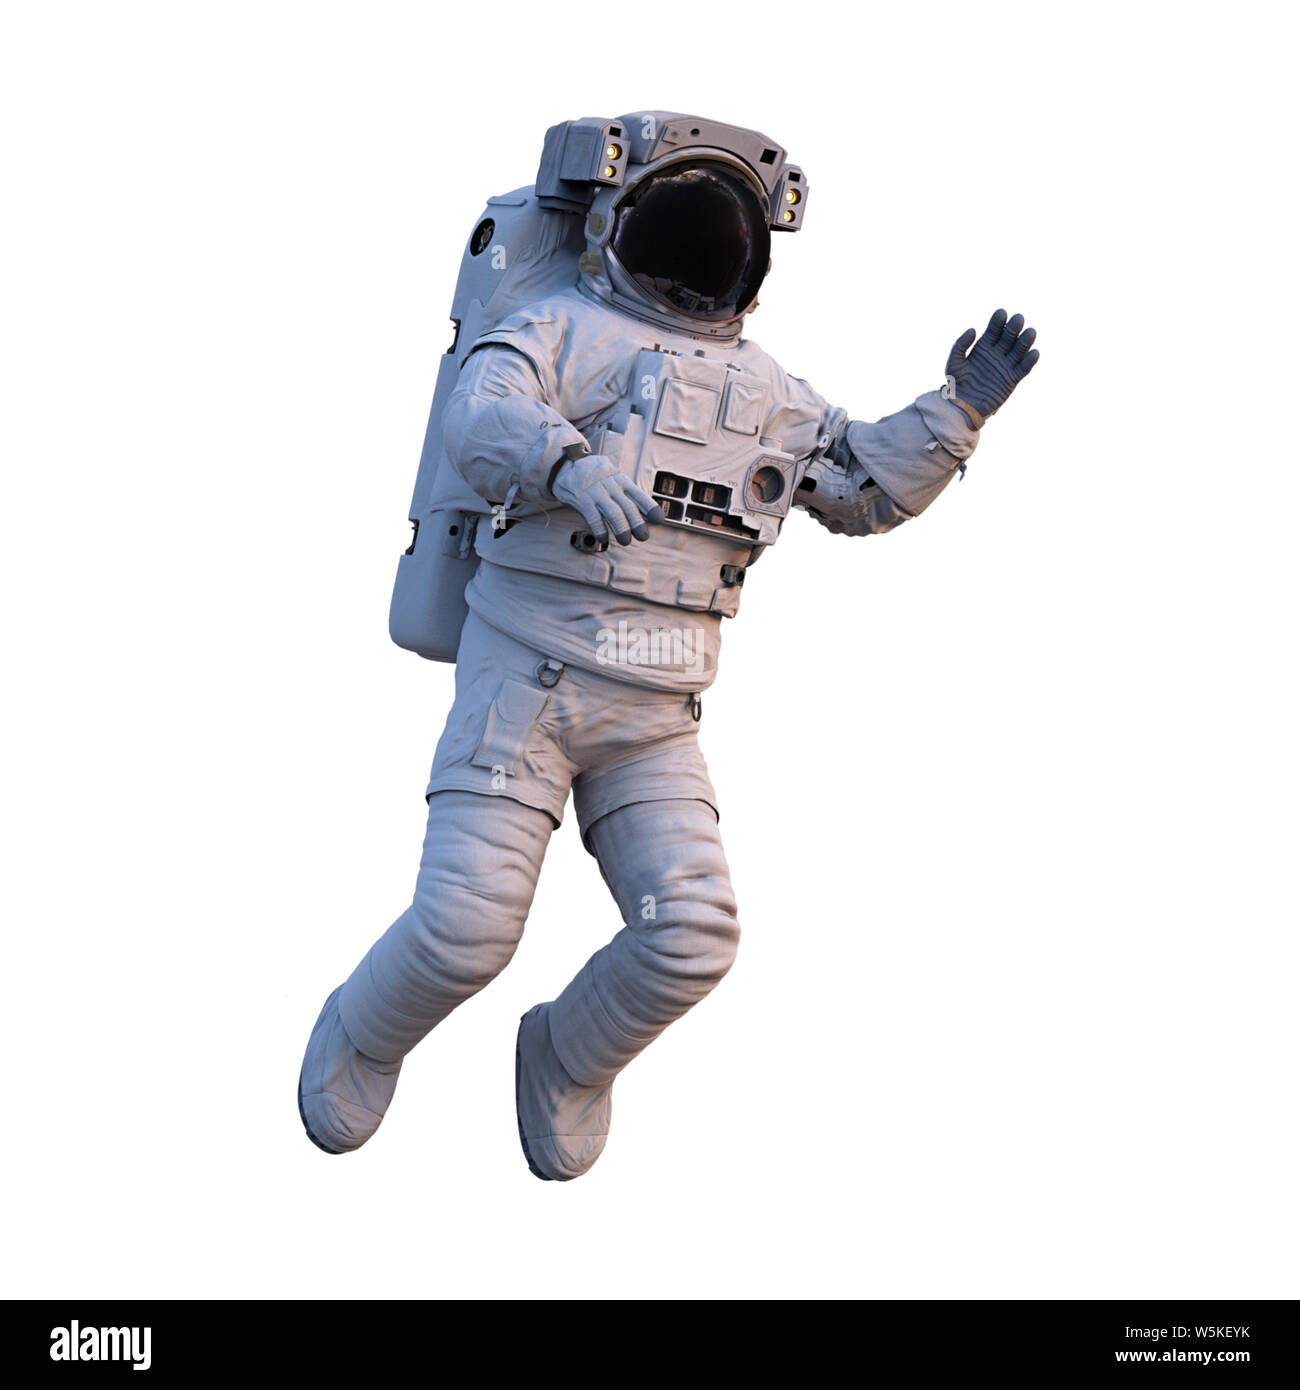 Brandissant des astronautes dans l'espace de marche, isolé sur fond blanc Banque D'Images